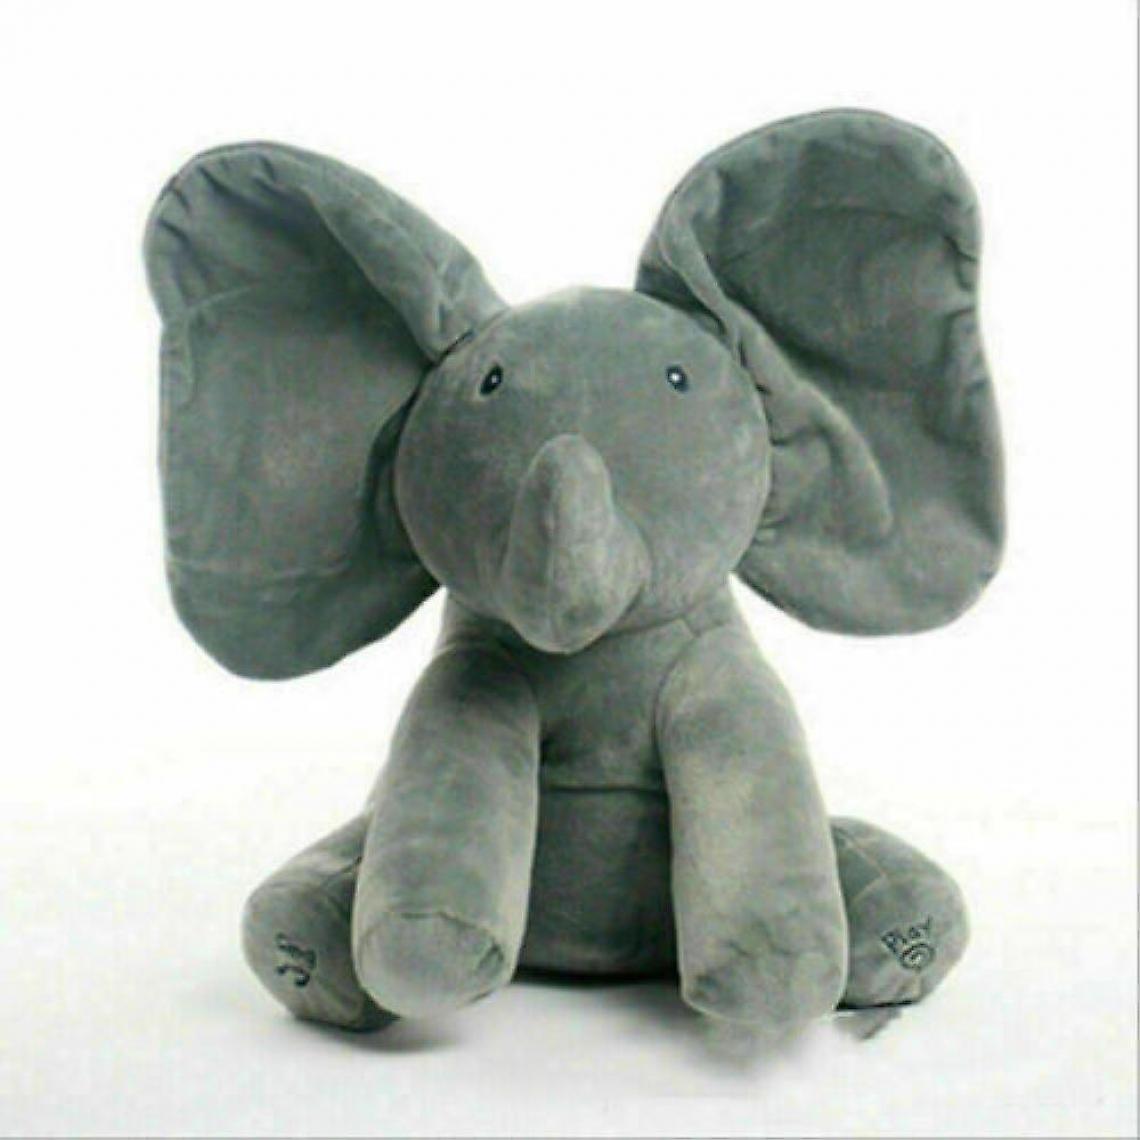 Universal - Musique éléphant peluche jouet peluche chanter poupée bébé cadeau enfant (gris) - Animaux